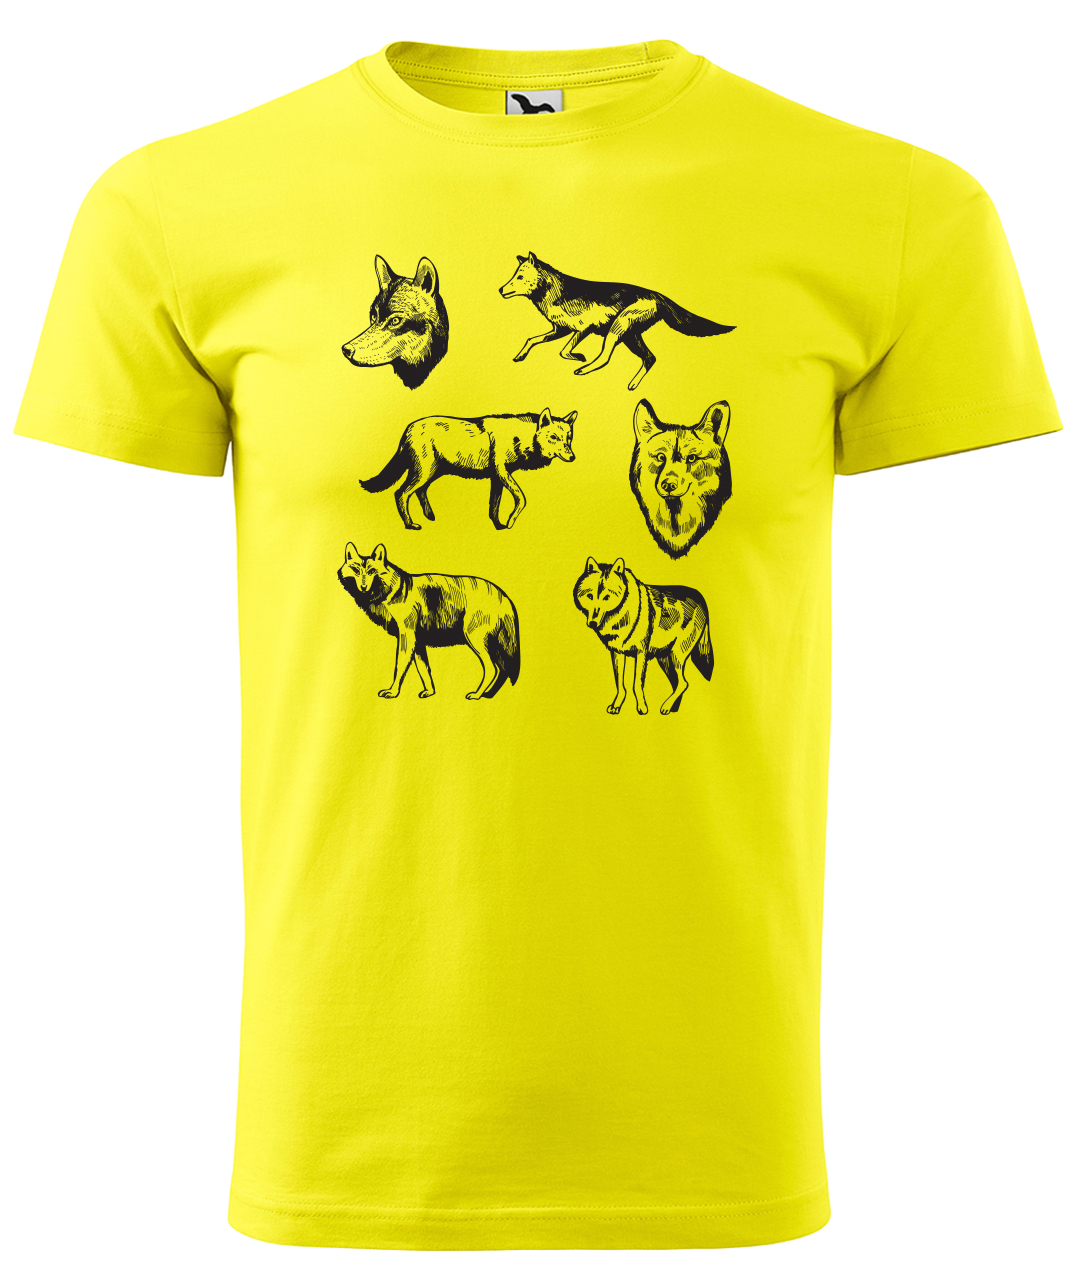 Dětské tričko s vlkem - Vlci Velikost: 4 roky / 110 cm, Barva: Žlutá (04), Délka rukávu: Krátký rukáv